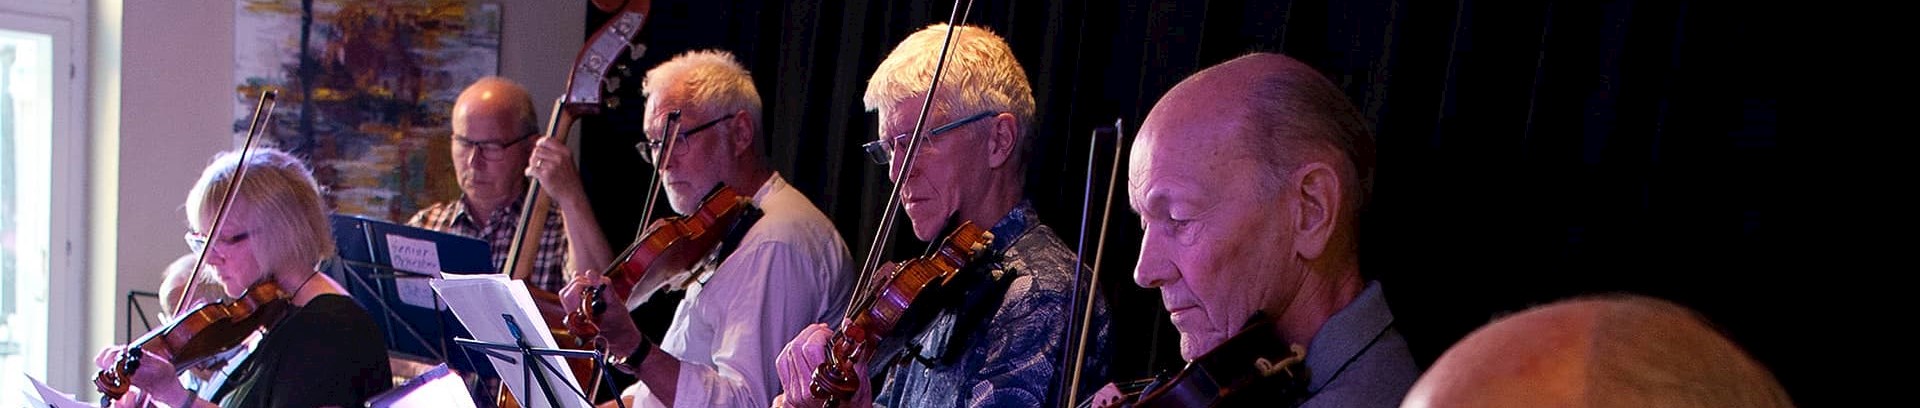 Violinkursister til koncert på Cafe Gyngen, FOF Aarhus' forårskoncert.